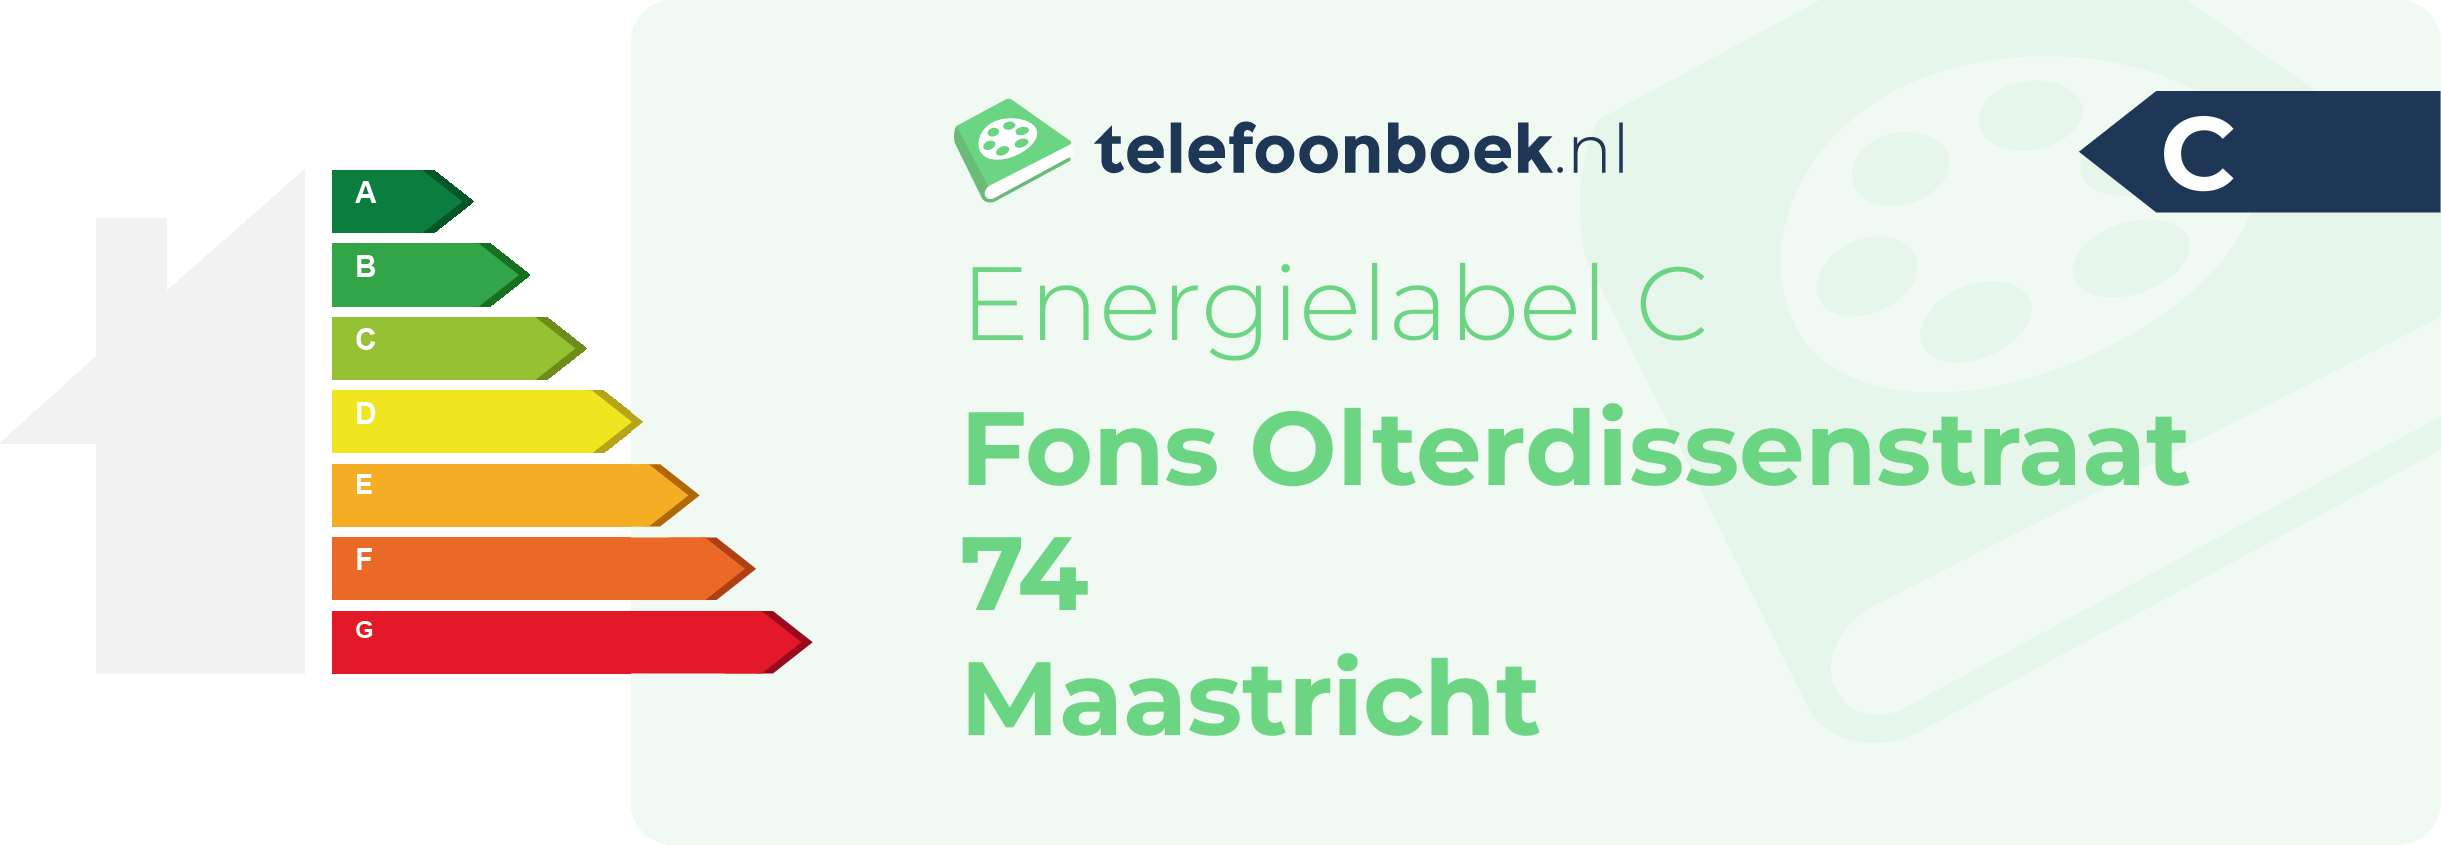 Energielabel Fons Olterdissenstraat 74 Maastricht